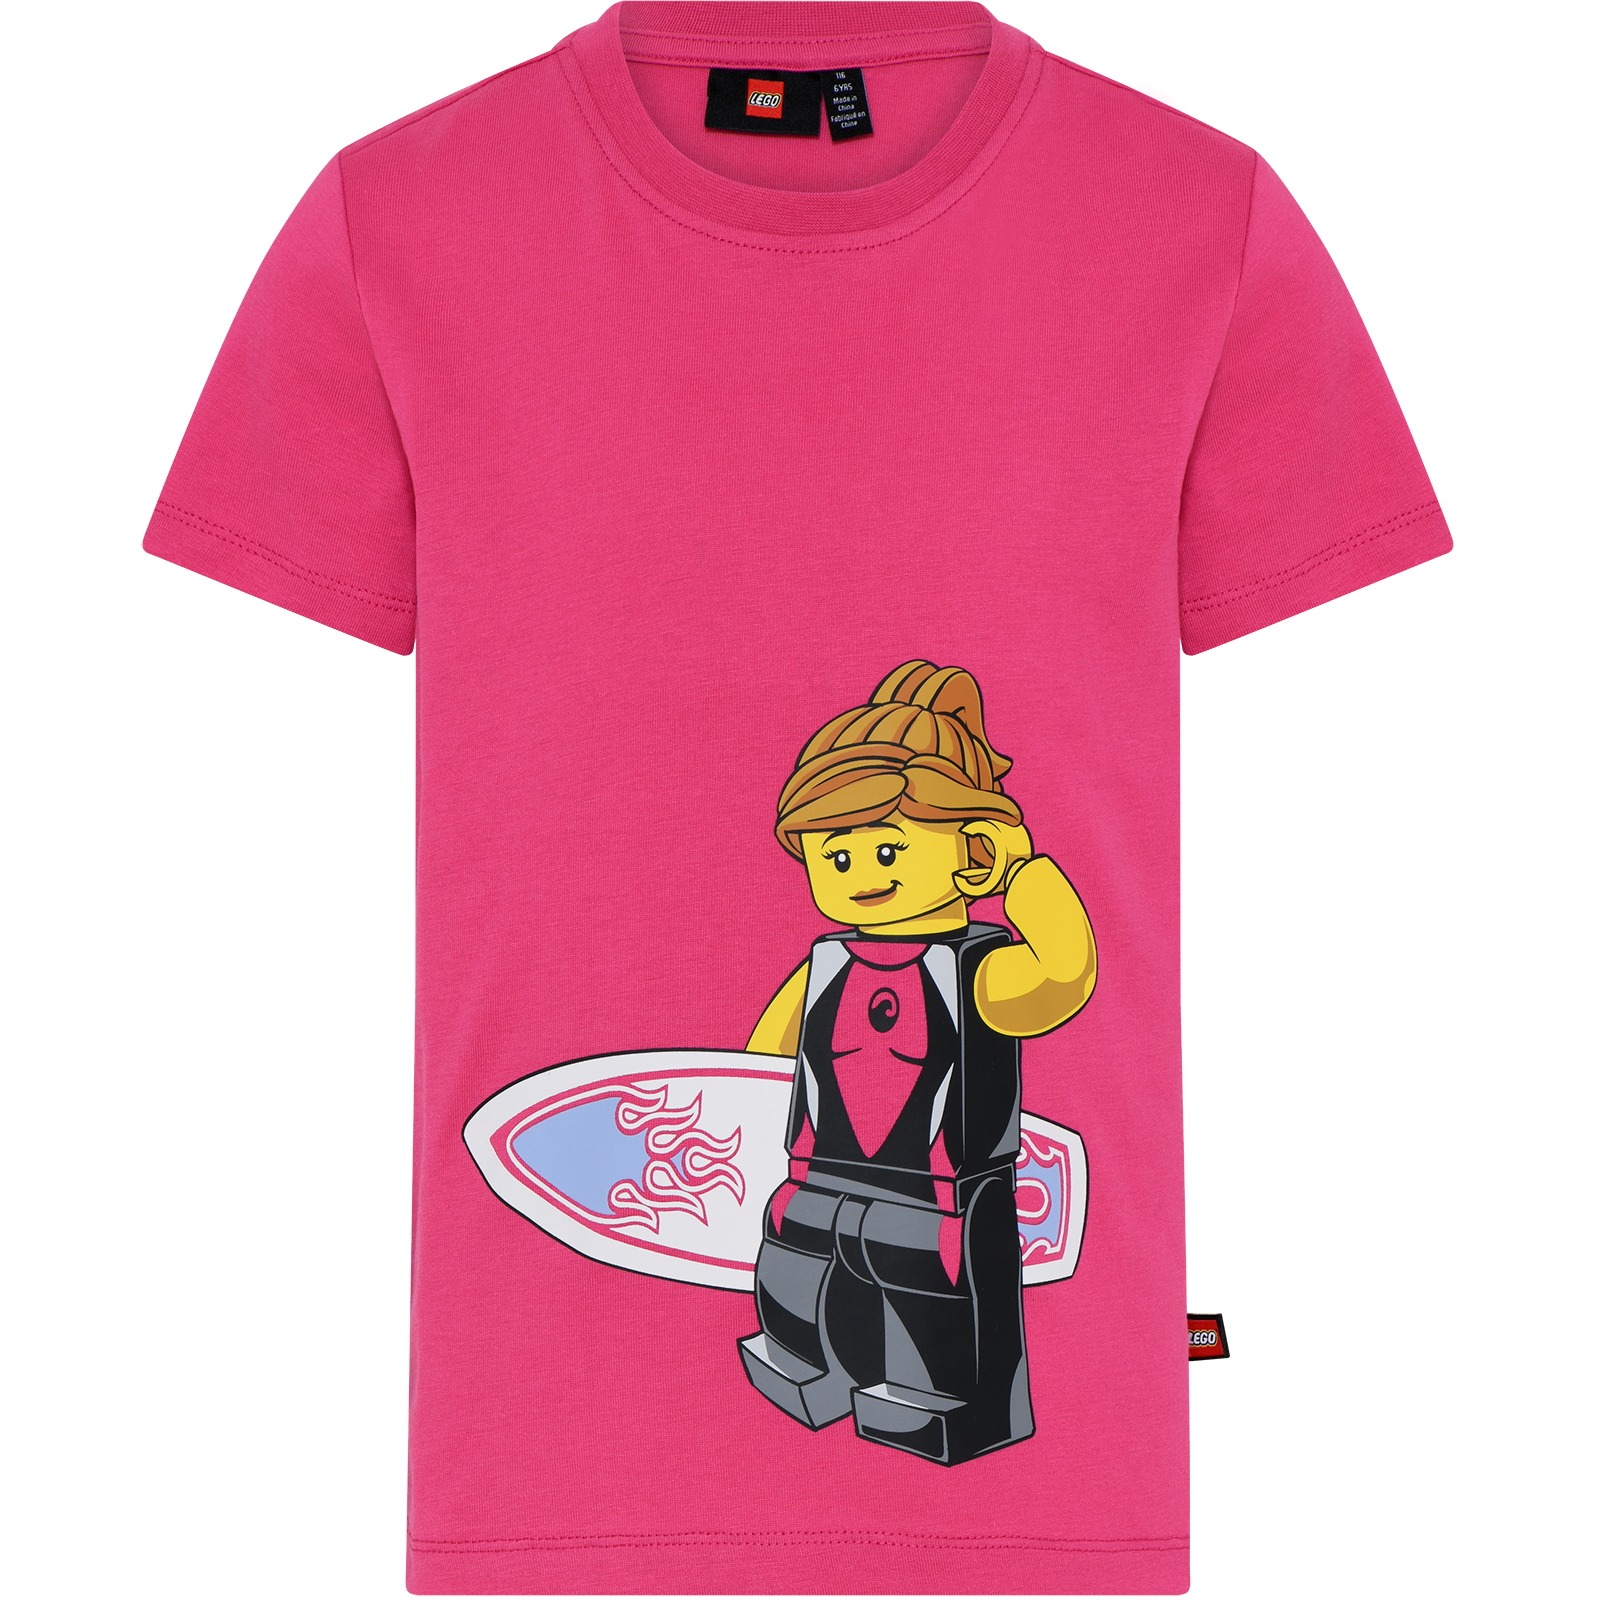 Immagine prodotto da LEGO® Maglietta Bambini - Taylor 311 - Lilac Rose